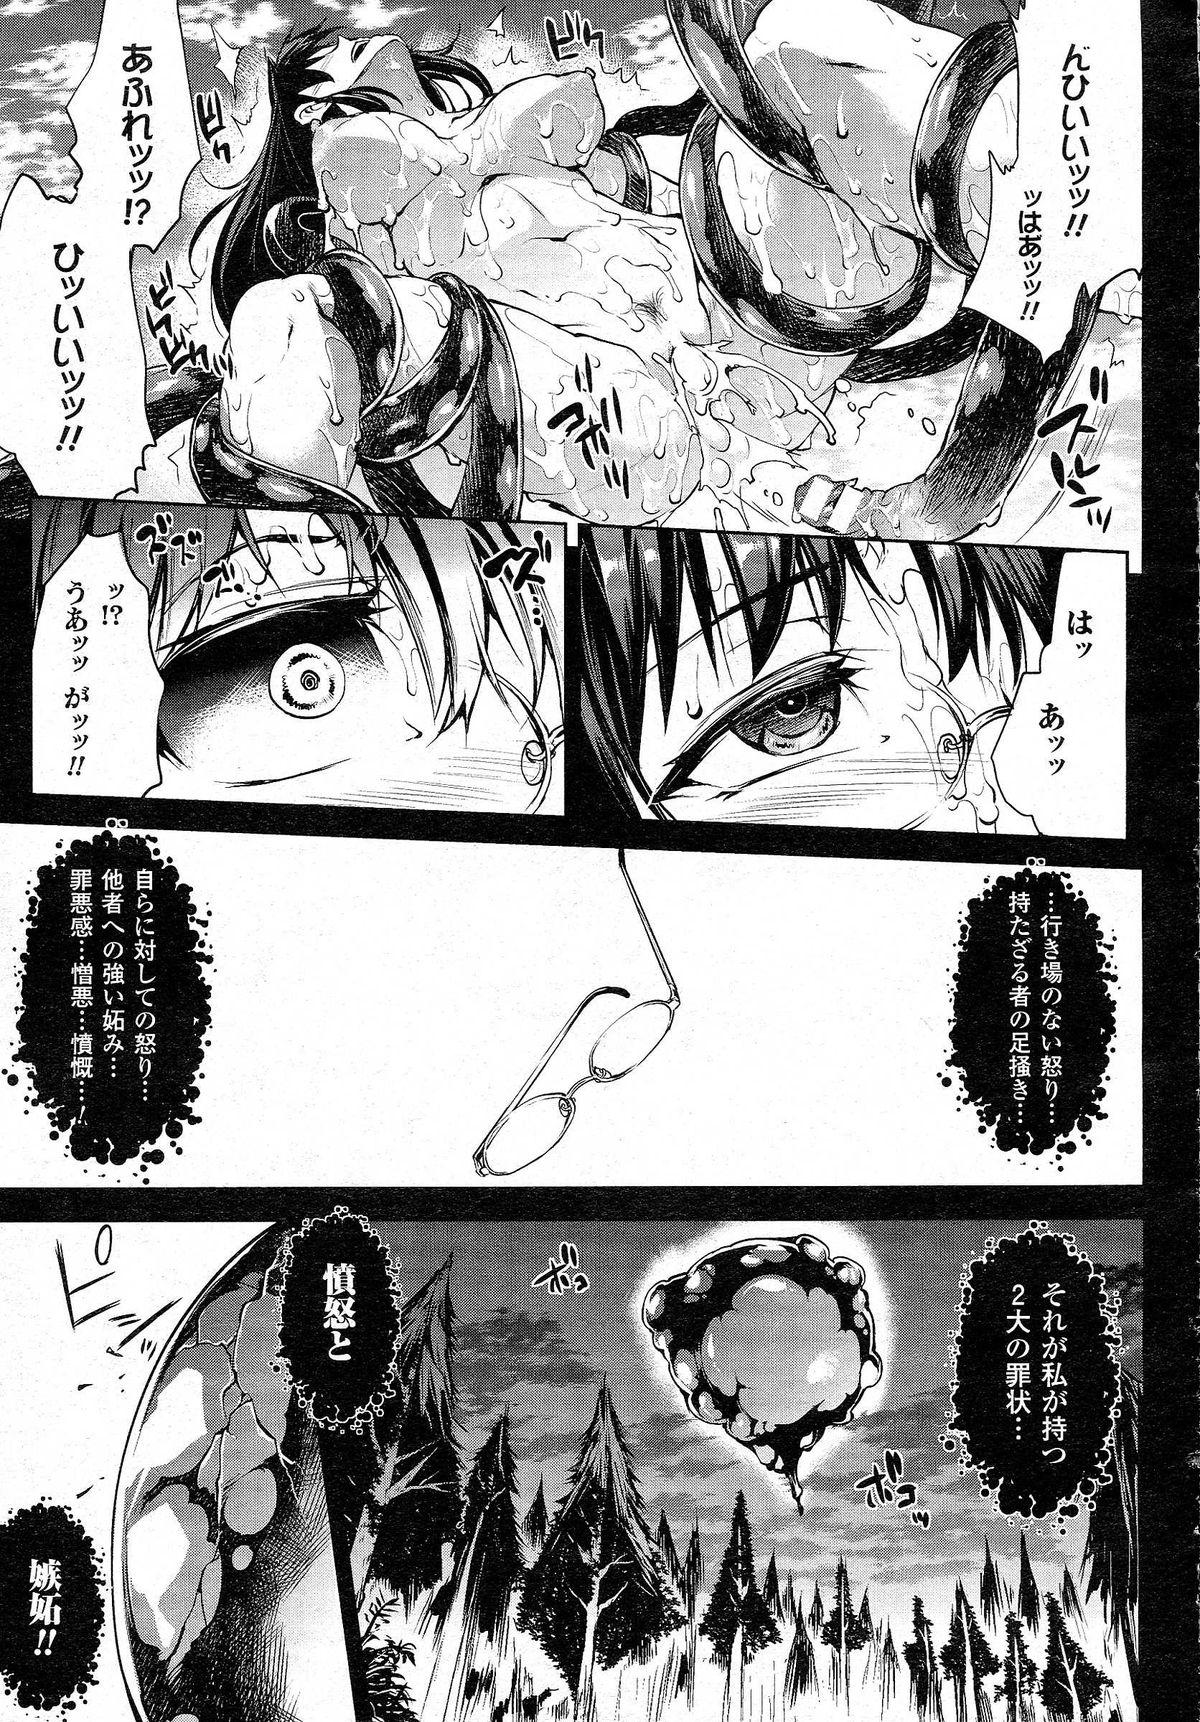 Masterbation [Erect Sawaru] Shinkyoku no Grimoire -PANDRA saga 2nd story- CH 13-20 Filipina - Page 11